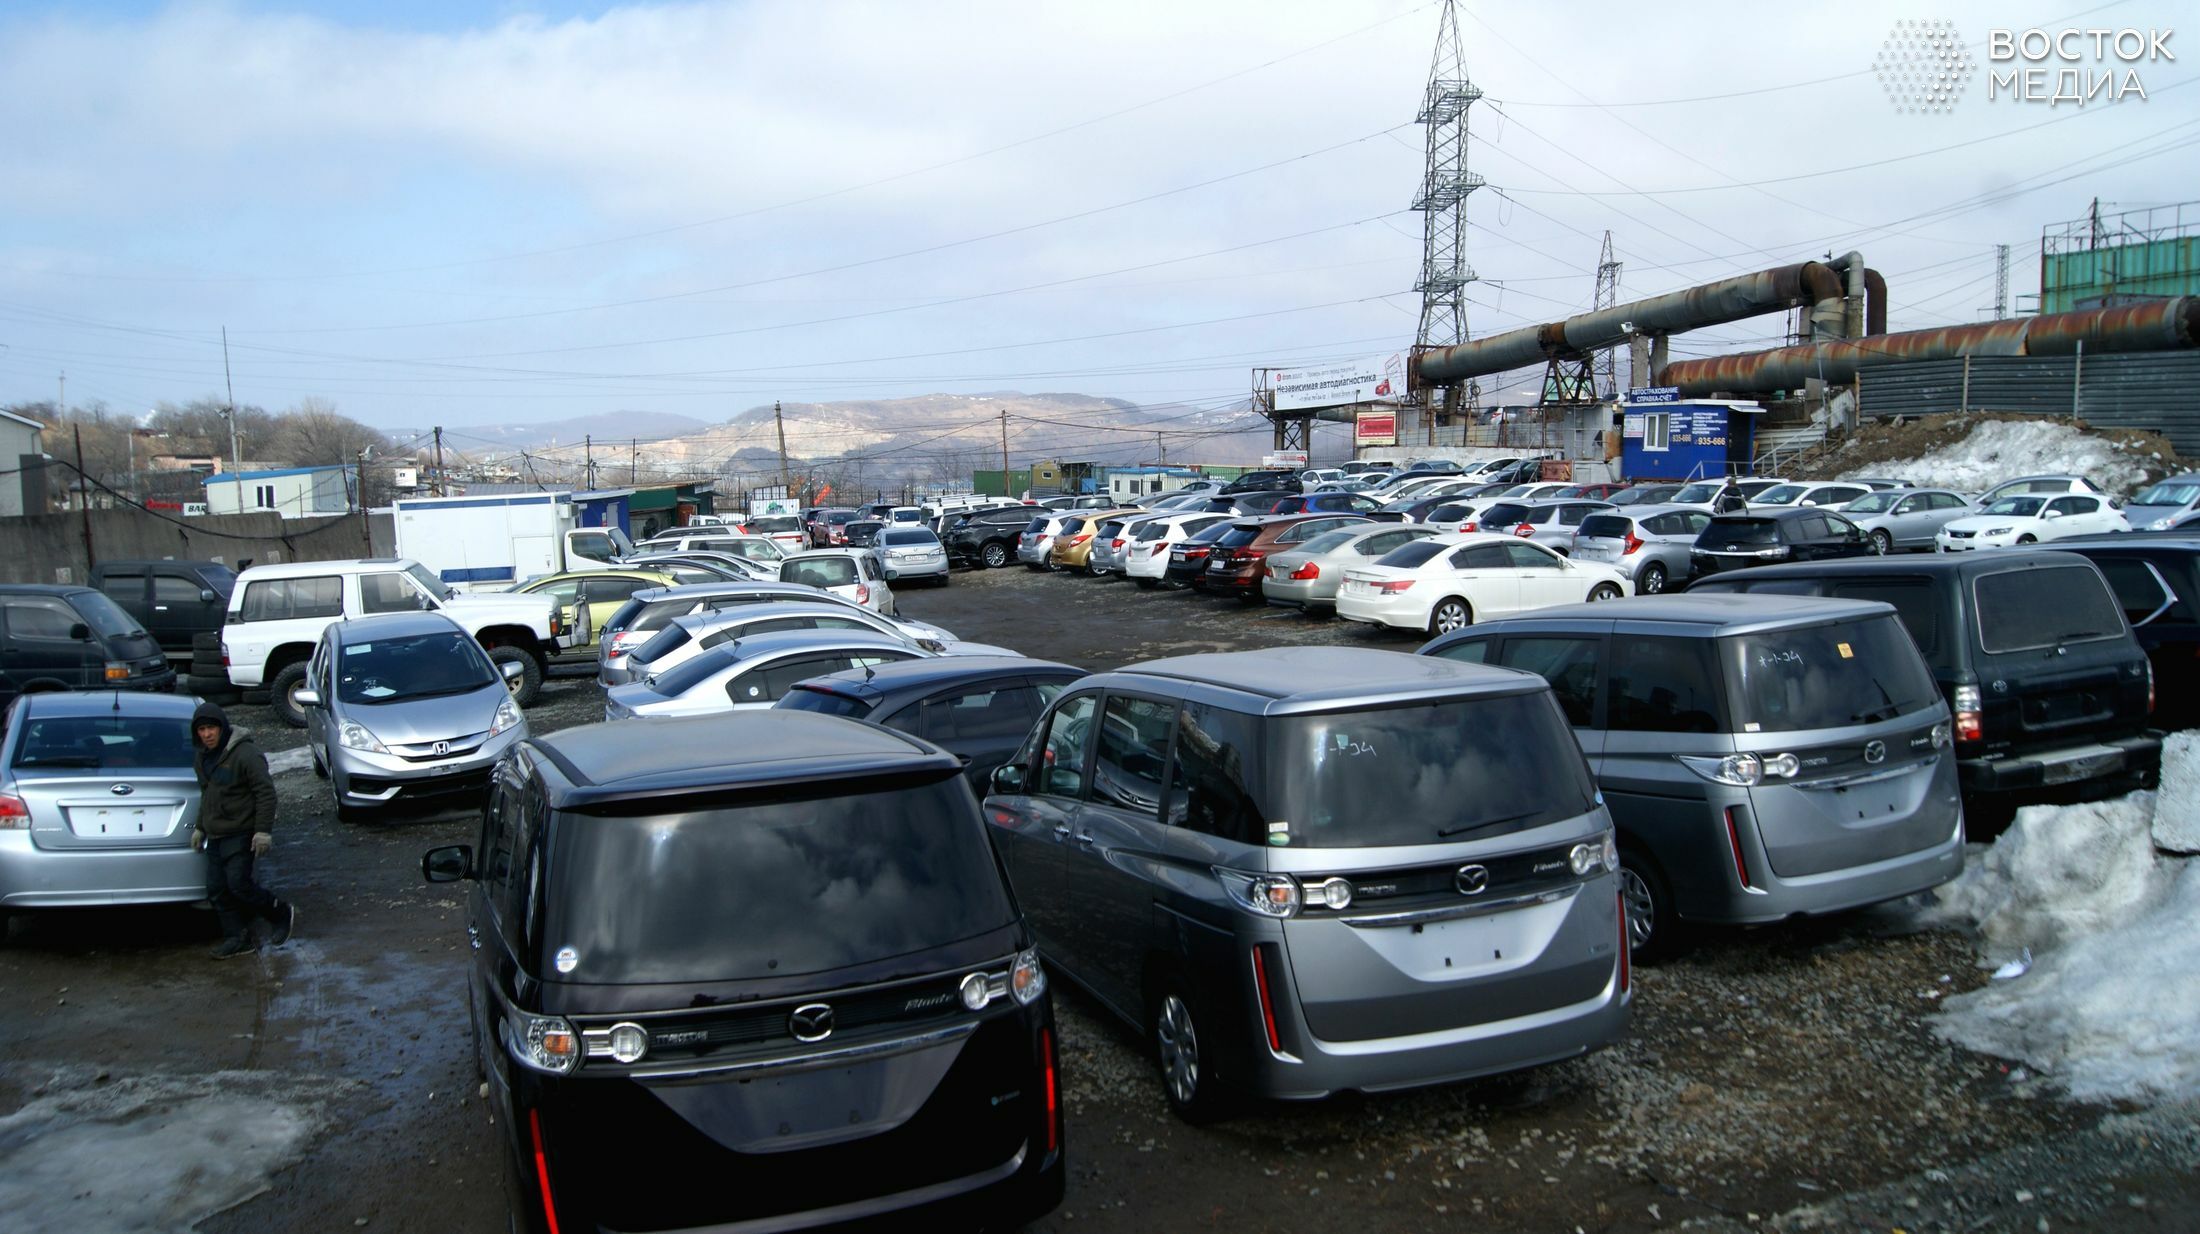 Авторынок «Зелёный угол» во Владивостоке: тысячи машин и единицы покупателей